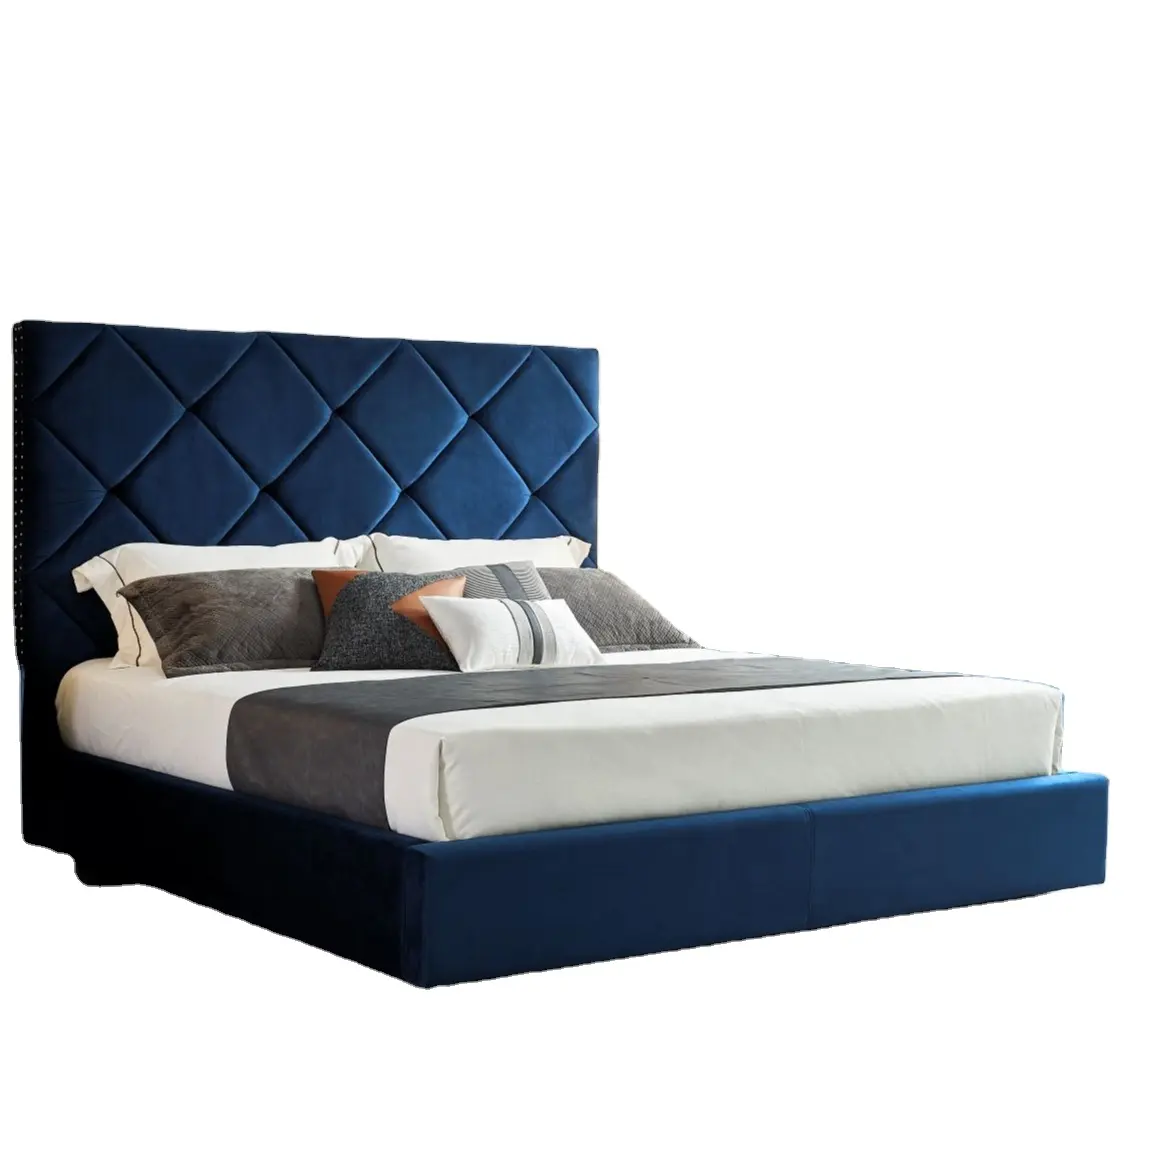 Komple özelleştirilmiş ahşap otel mobilya tasarımı yatak odası mobilya Set yatak odası takımları ve yüksek kalite Modern stil